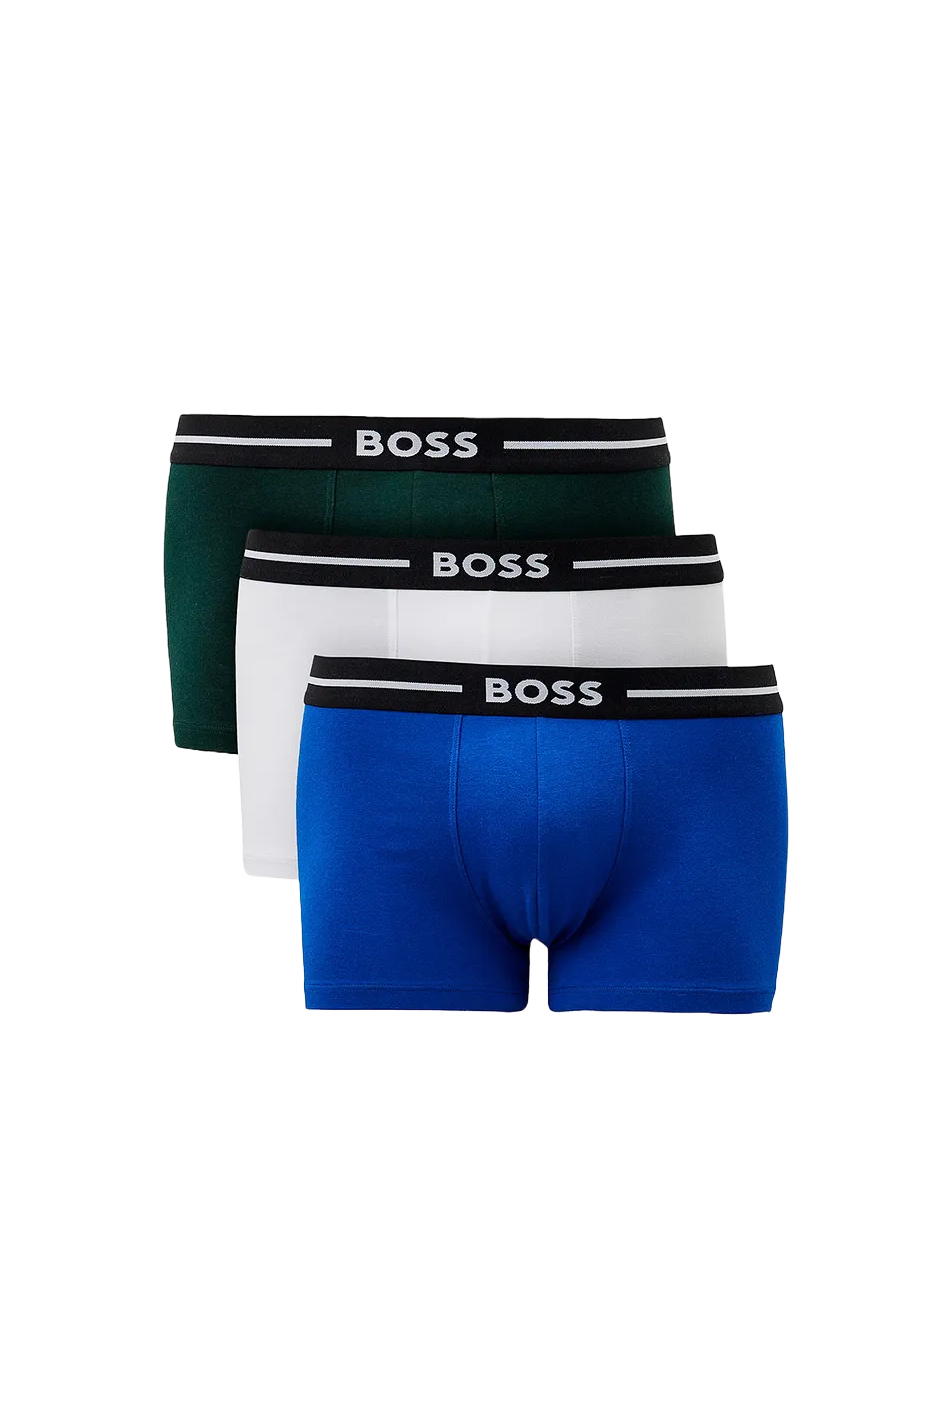 BOSS 3 Pack Men's Bold Trunk